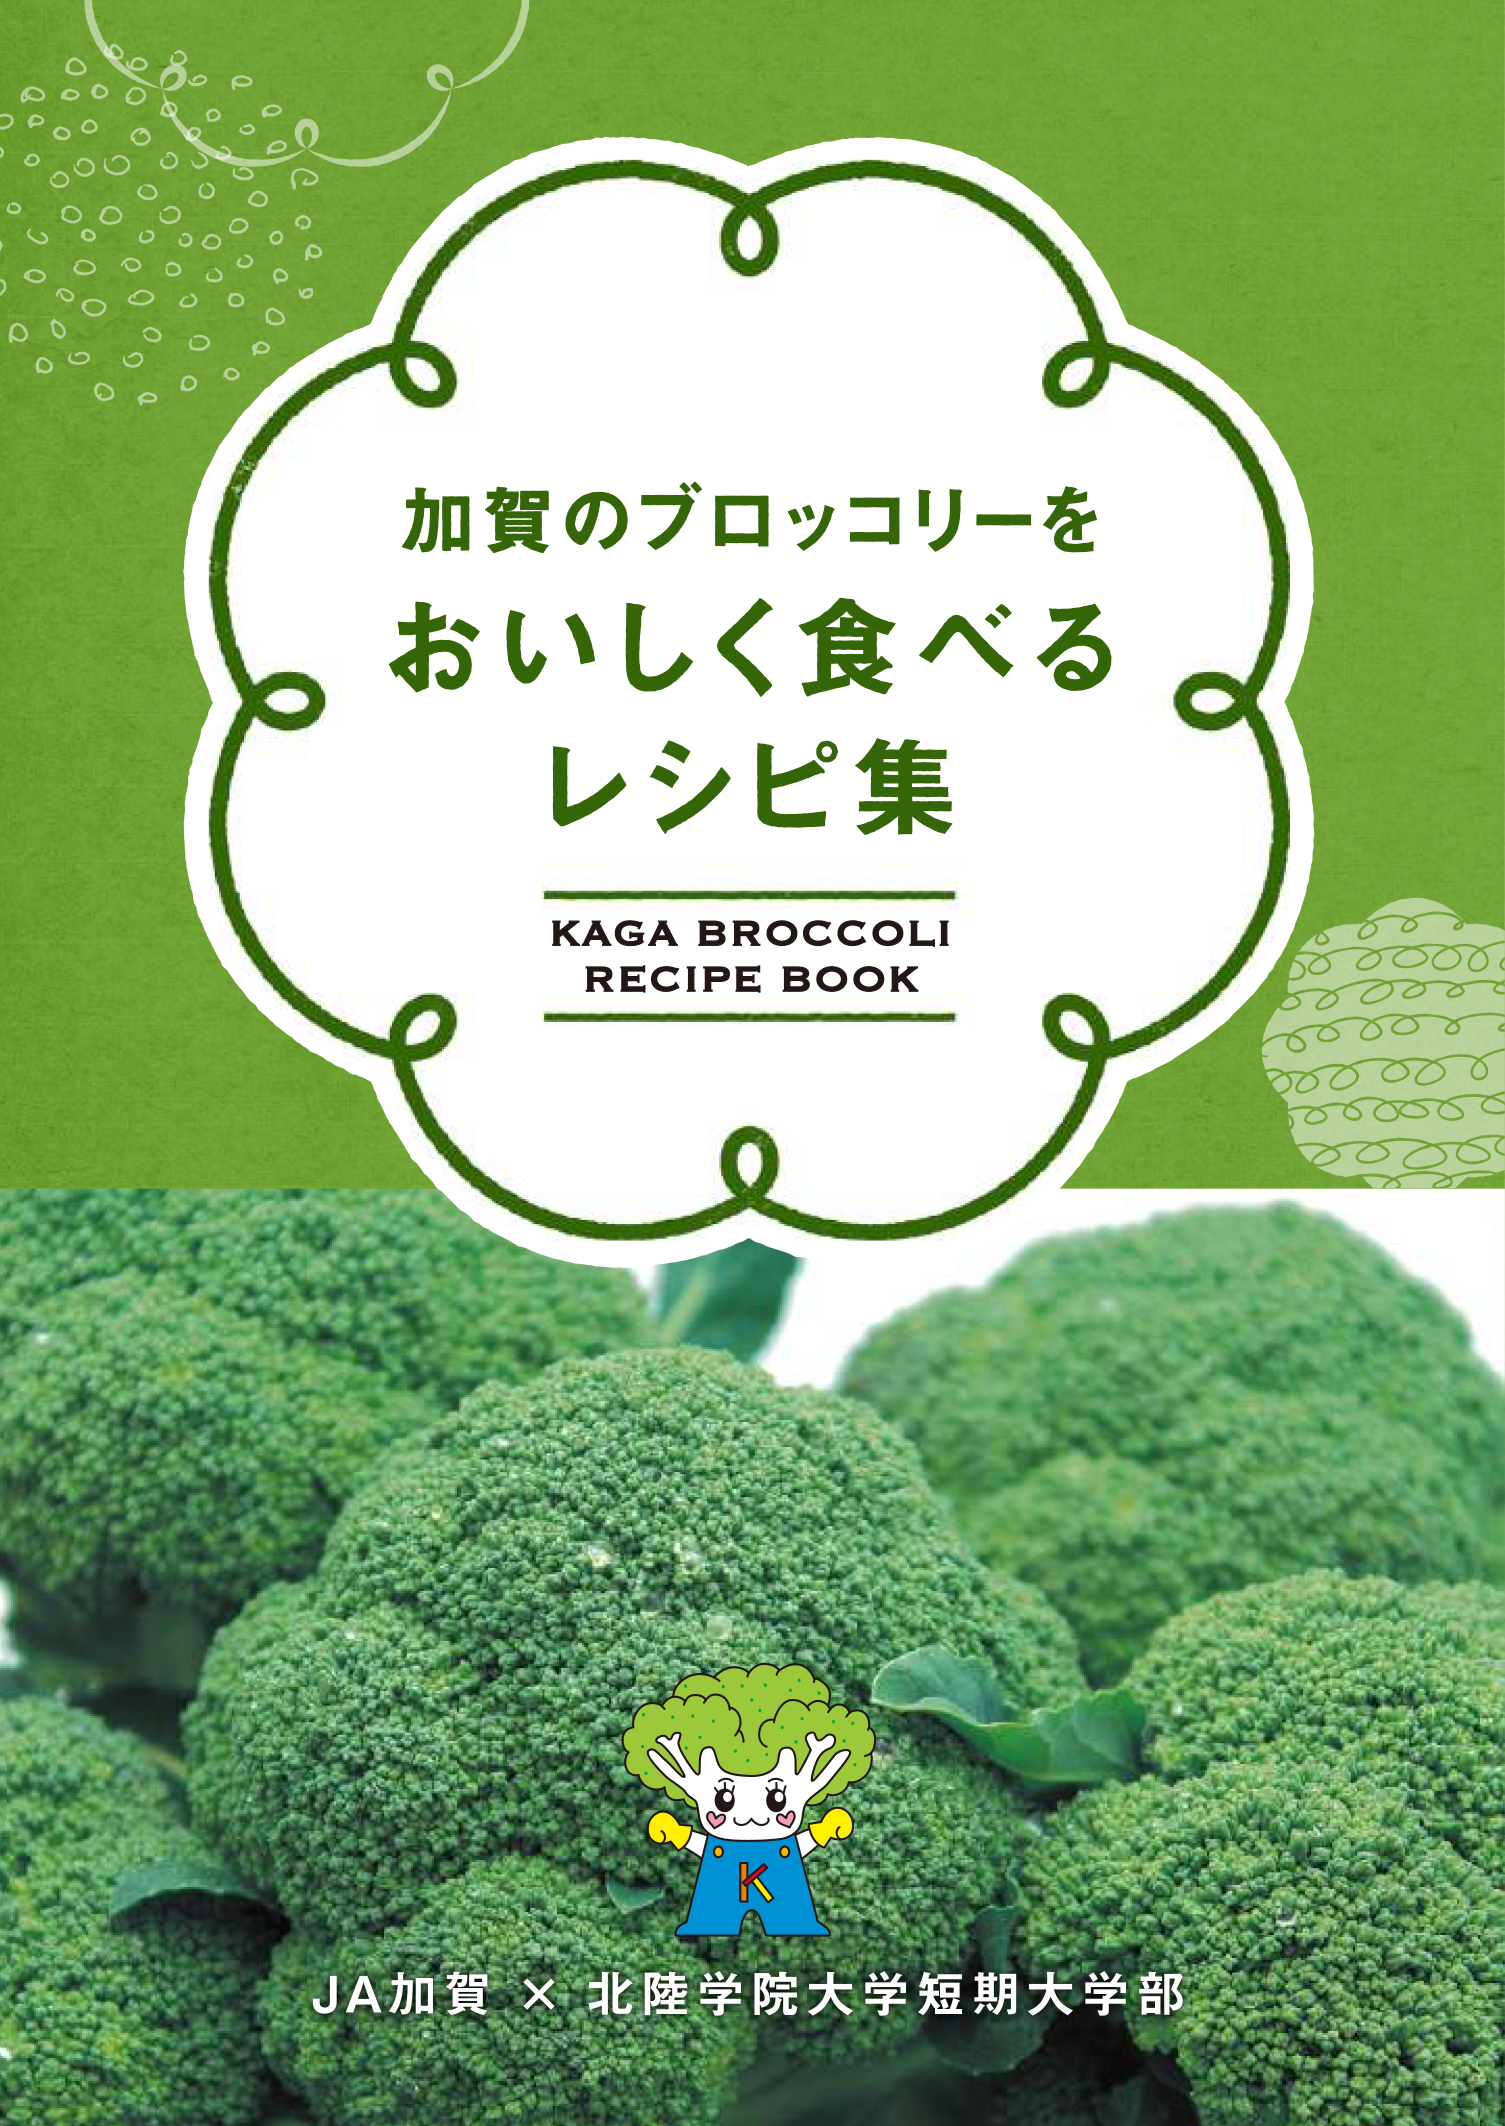 加賀のブロッコリーをおいしく食べるレシピ集